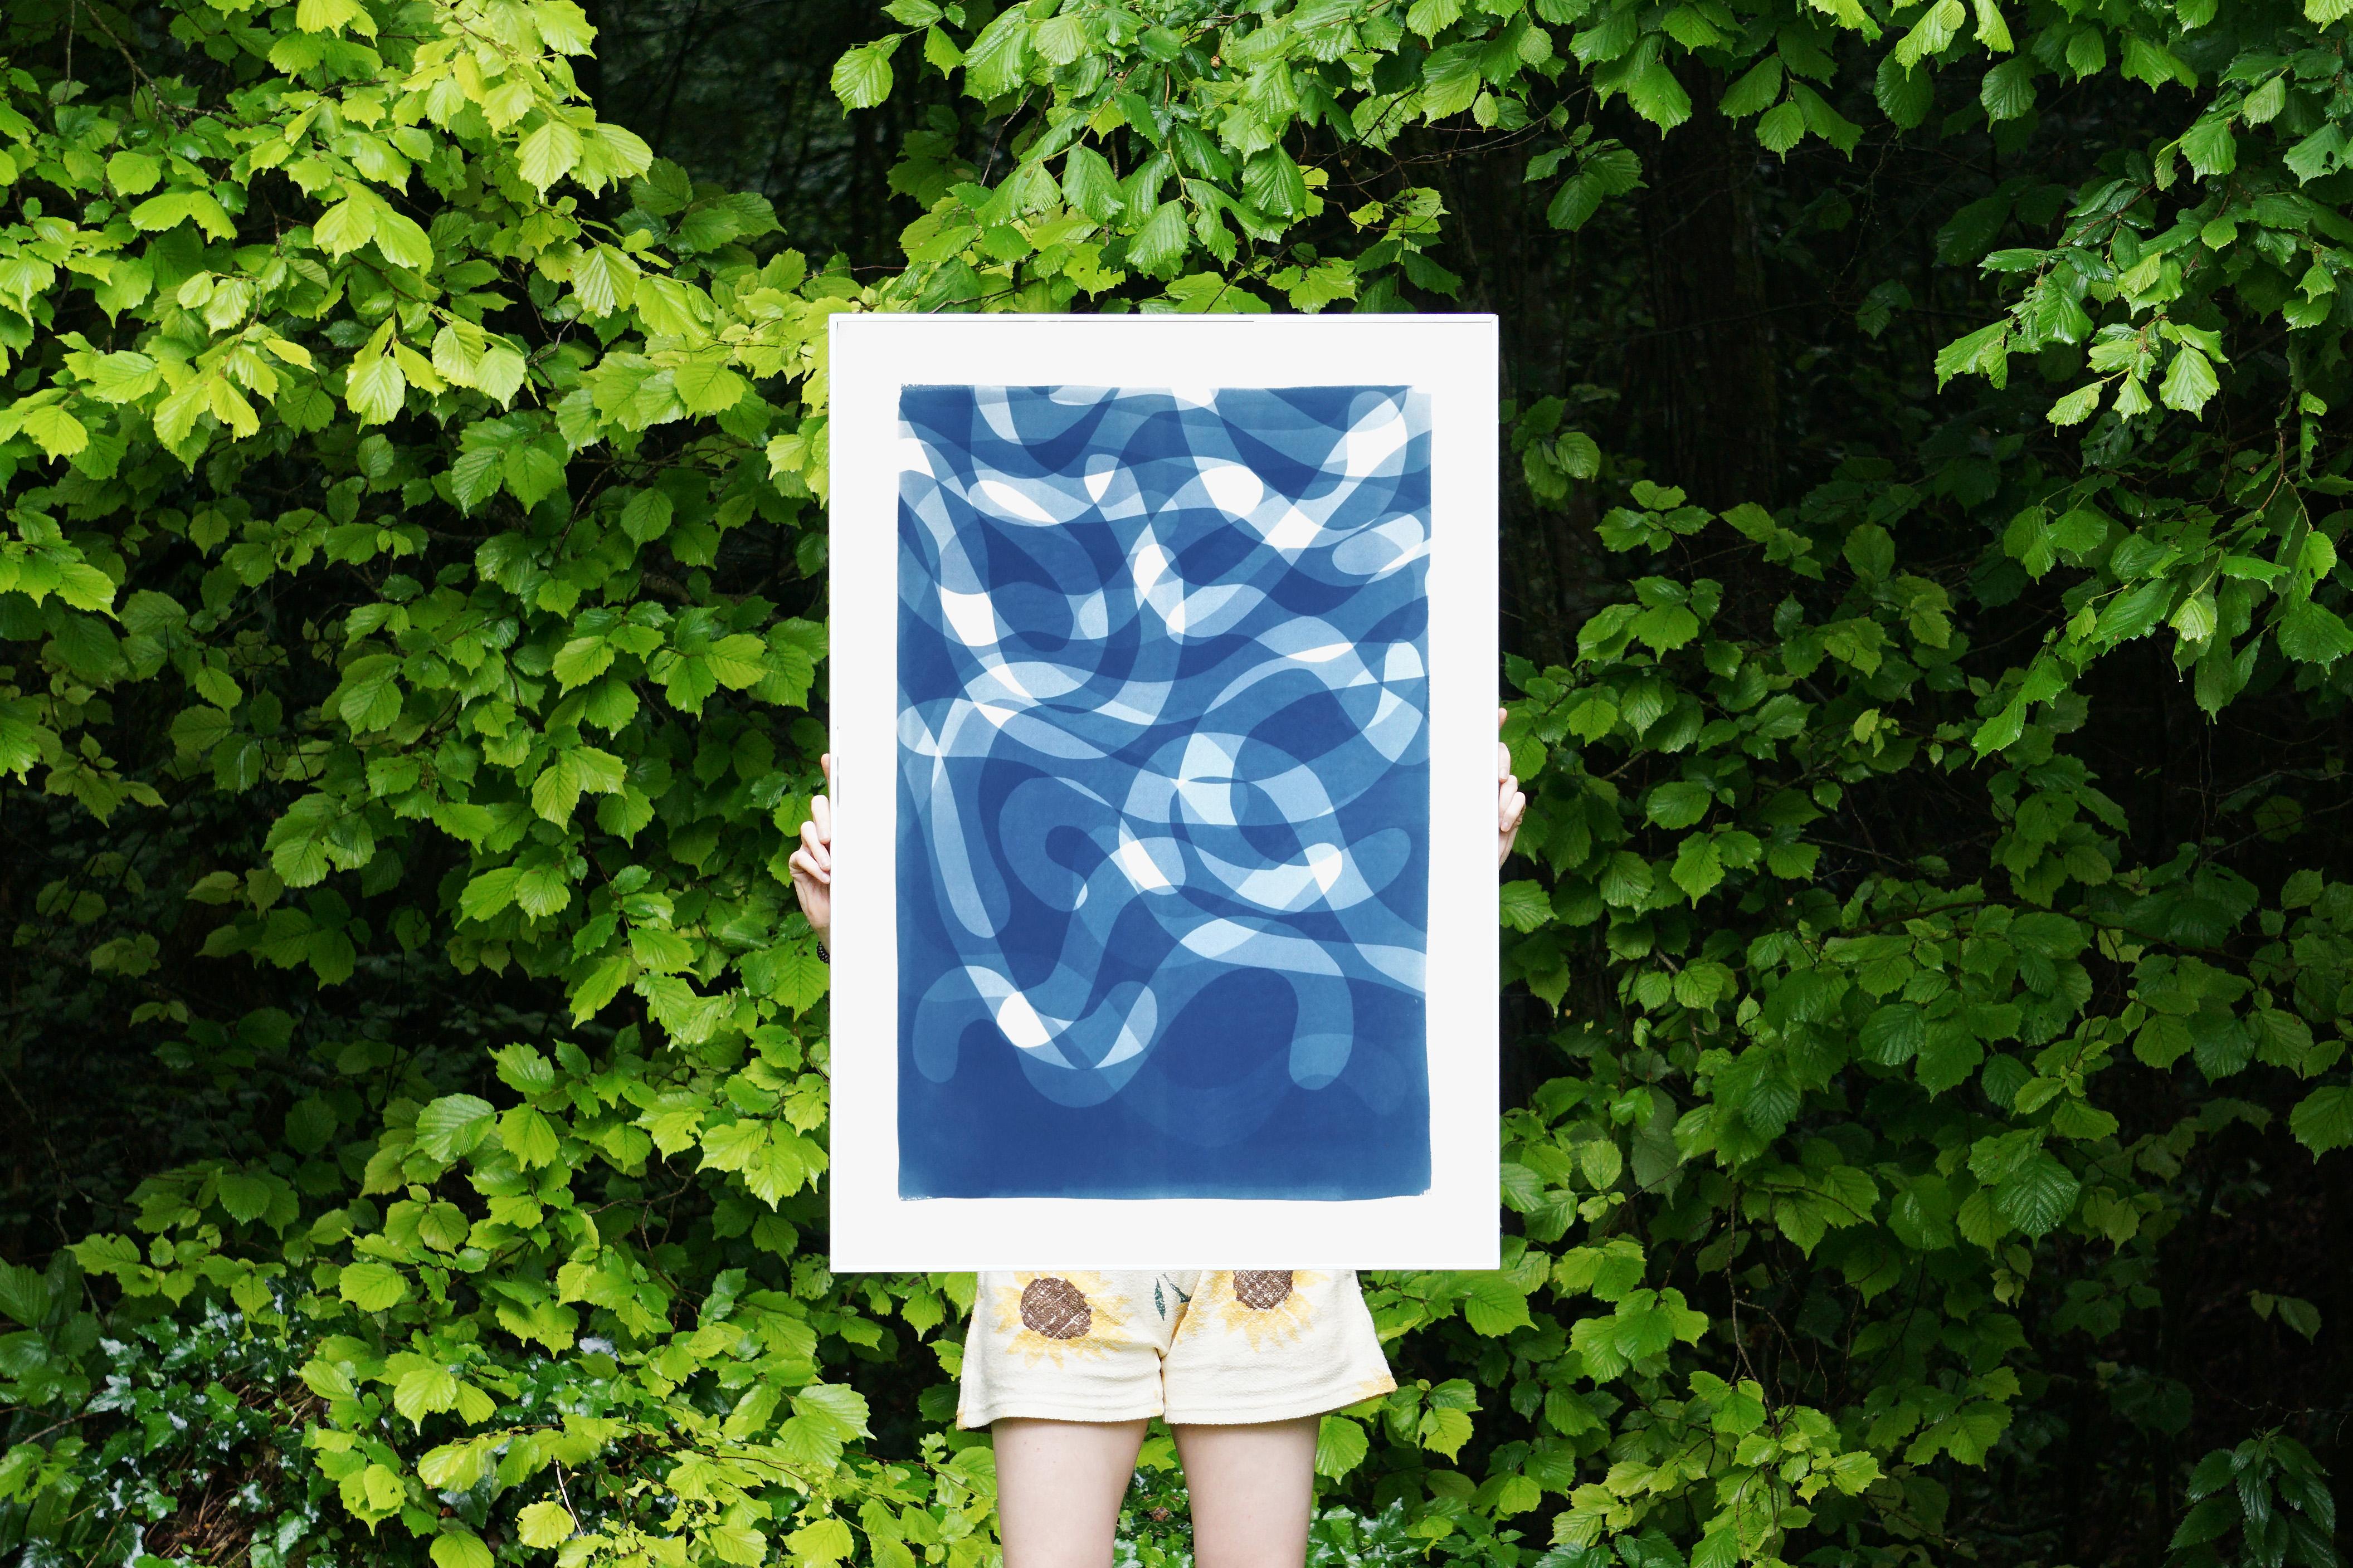 Des tourbillons tombés, couches courbes organiques dans les tons bleus, cyanotype sur papier fait à la main - Postmoderne Photograph par Kind of Cyan